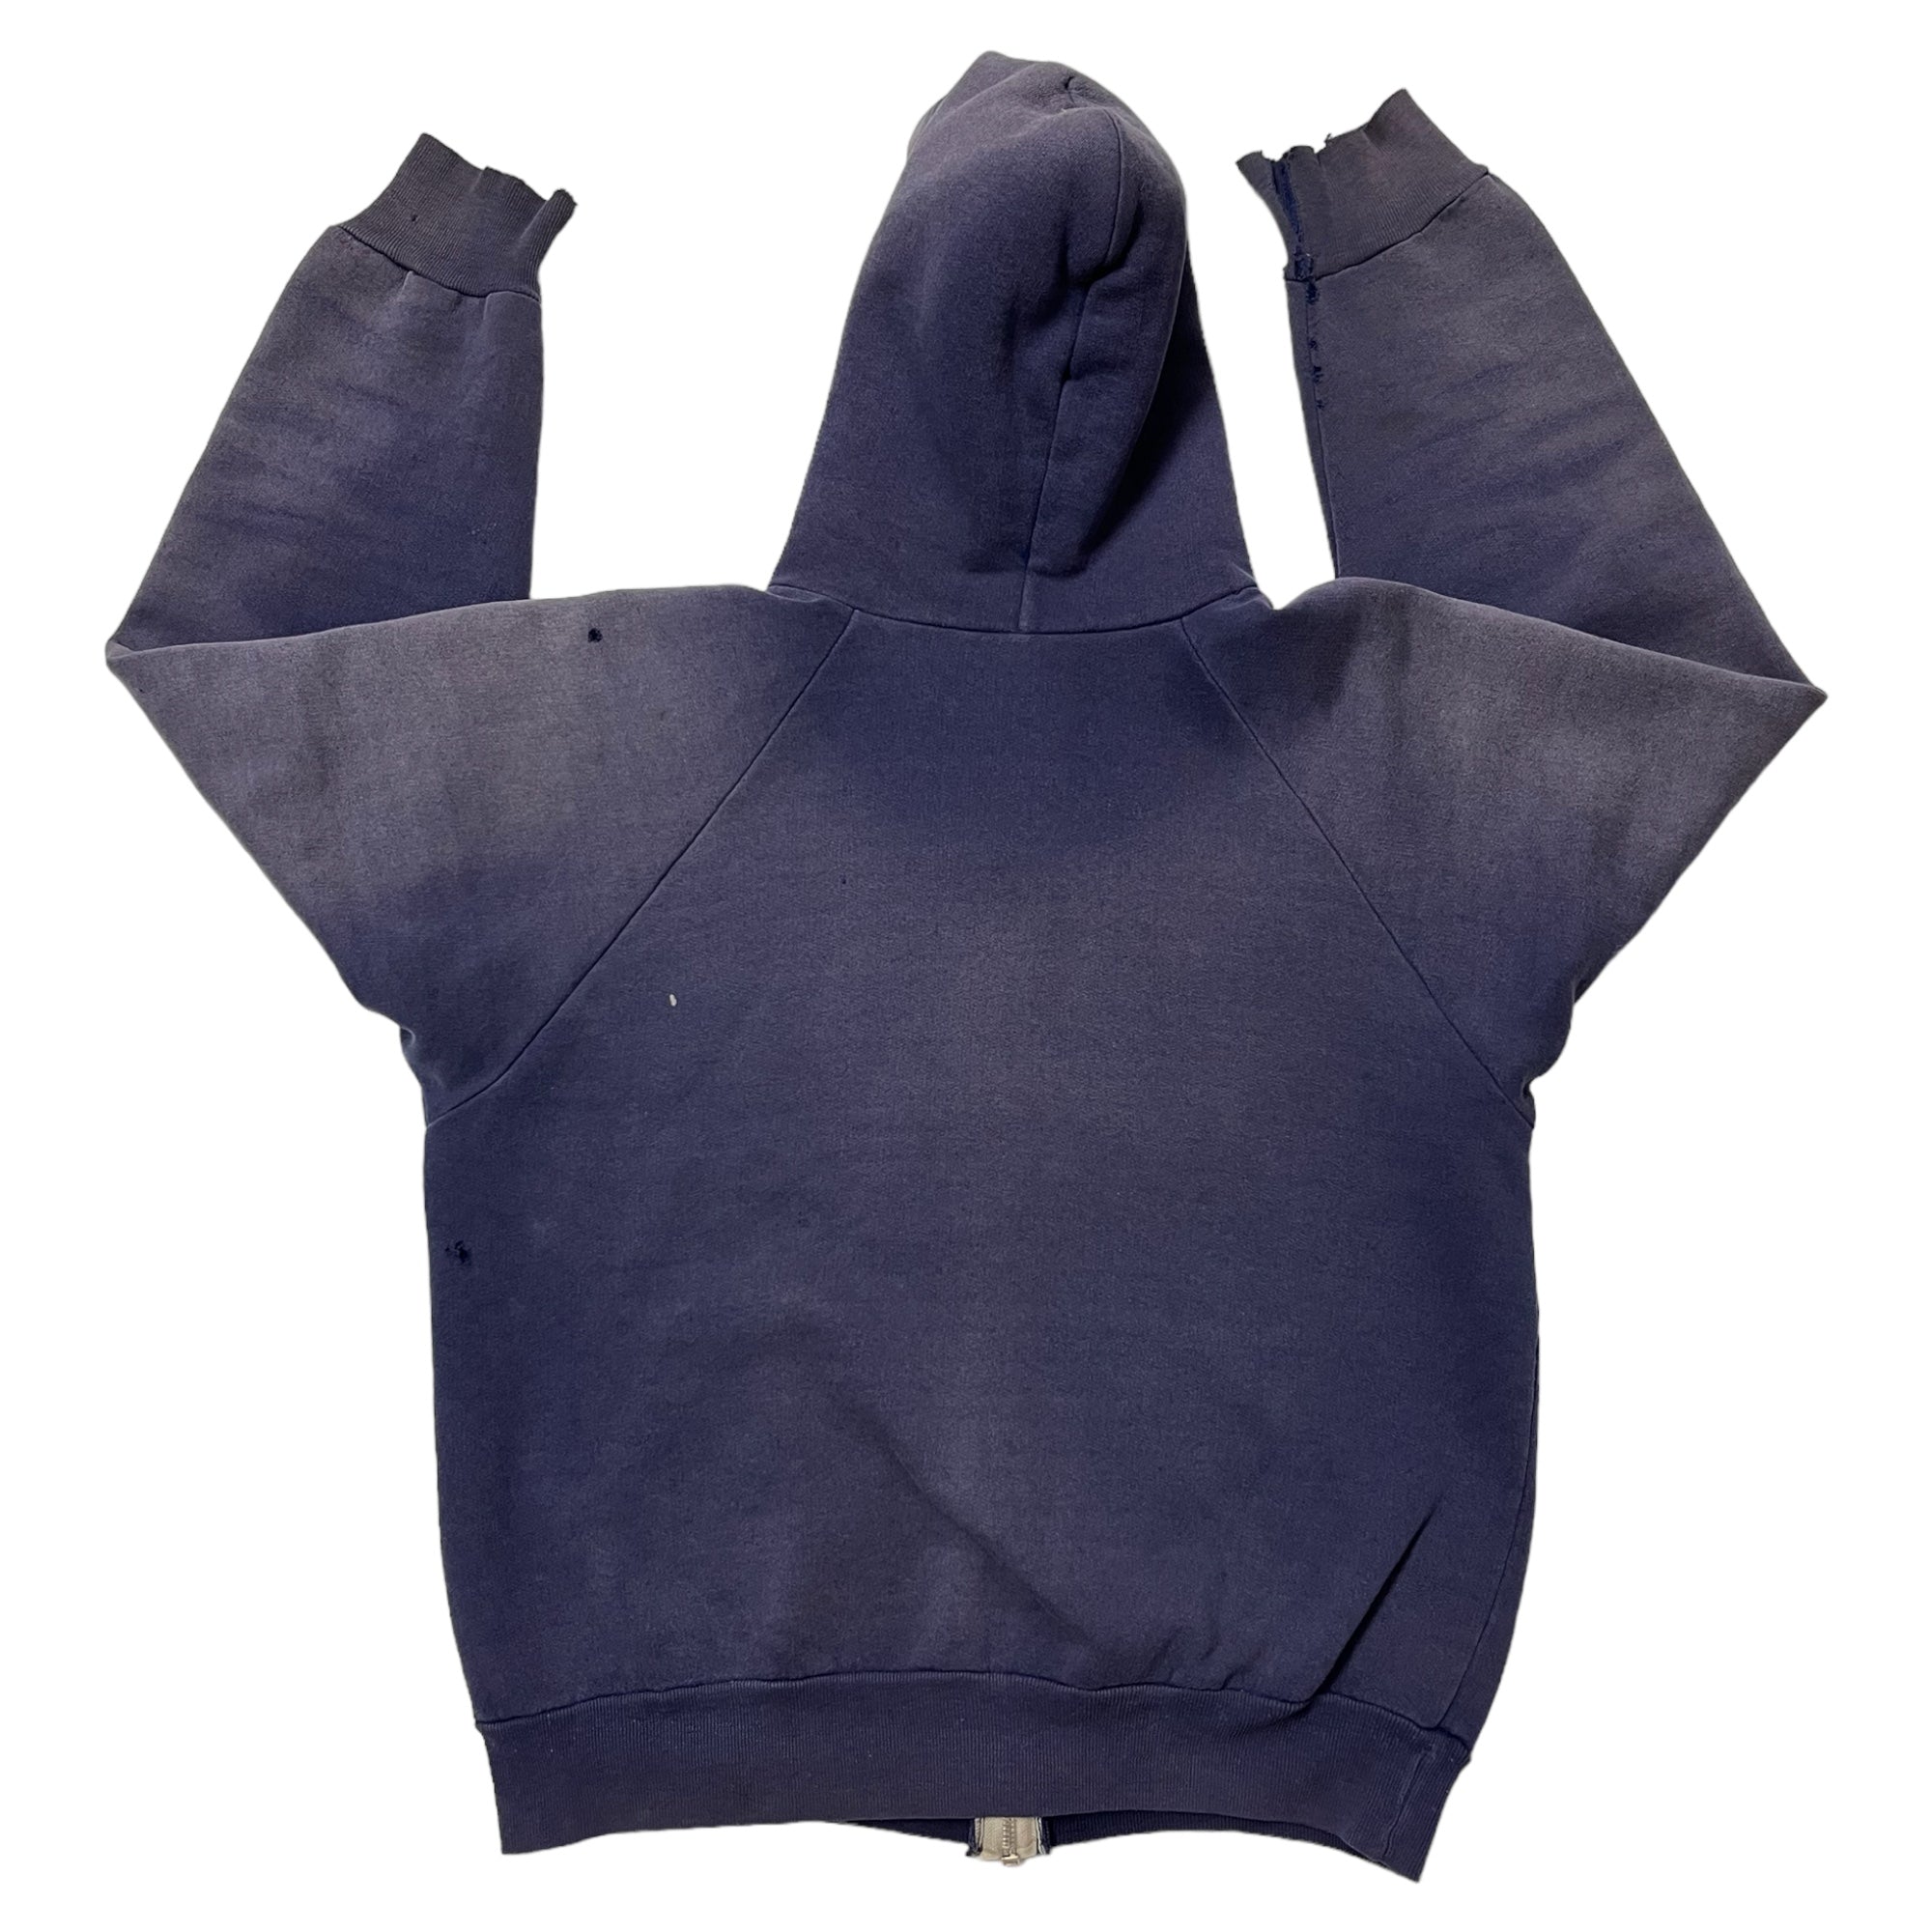 1960s/70s Distressed Zip-Up Sweatshirt - Faded Navy - S/M